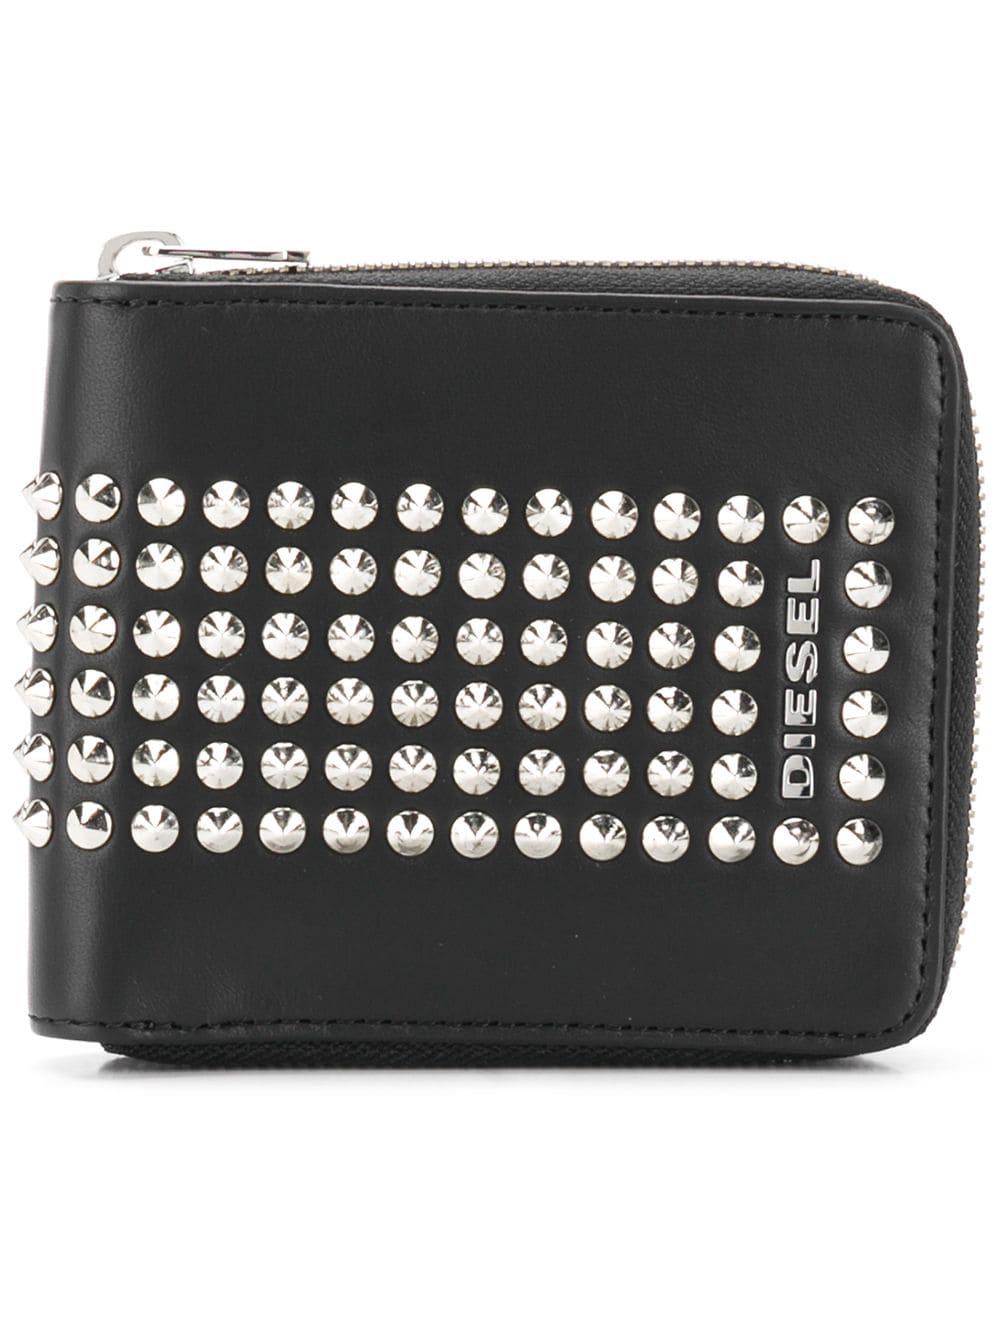 DIESEL Hiresh S Zipped Stud Wallet in Black for Men | Lyst